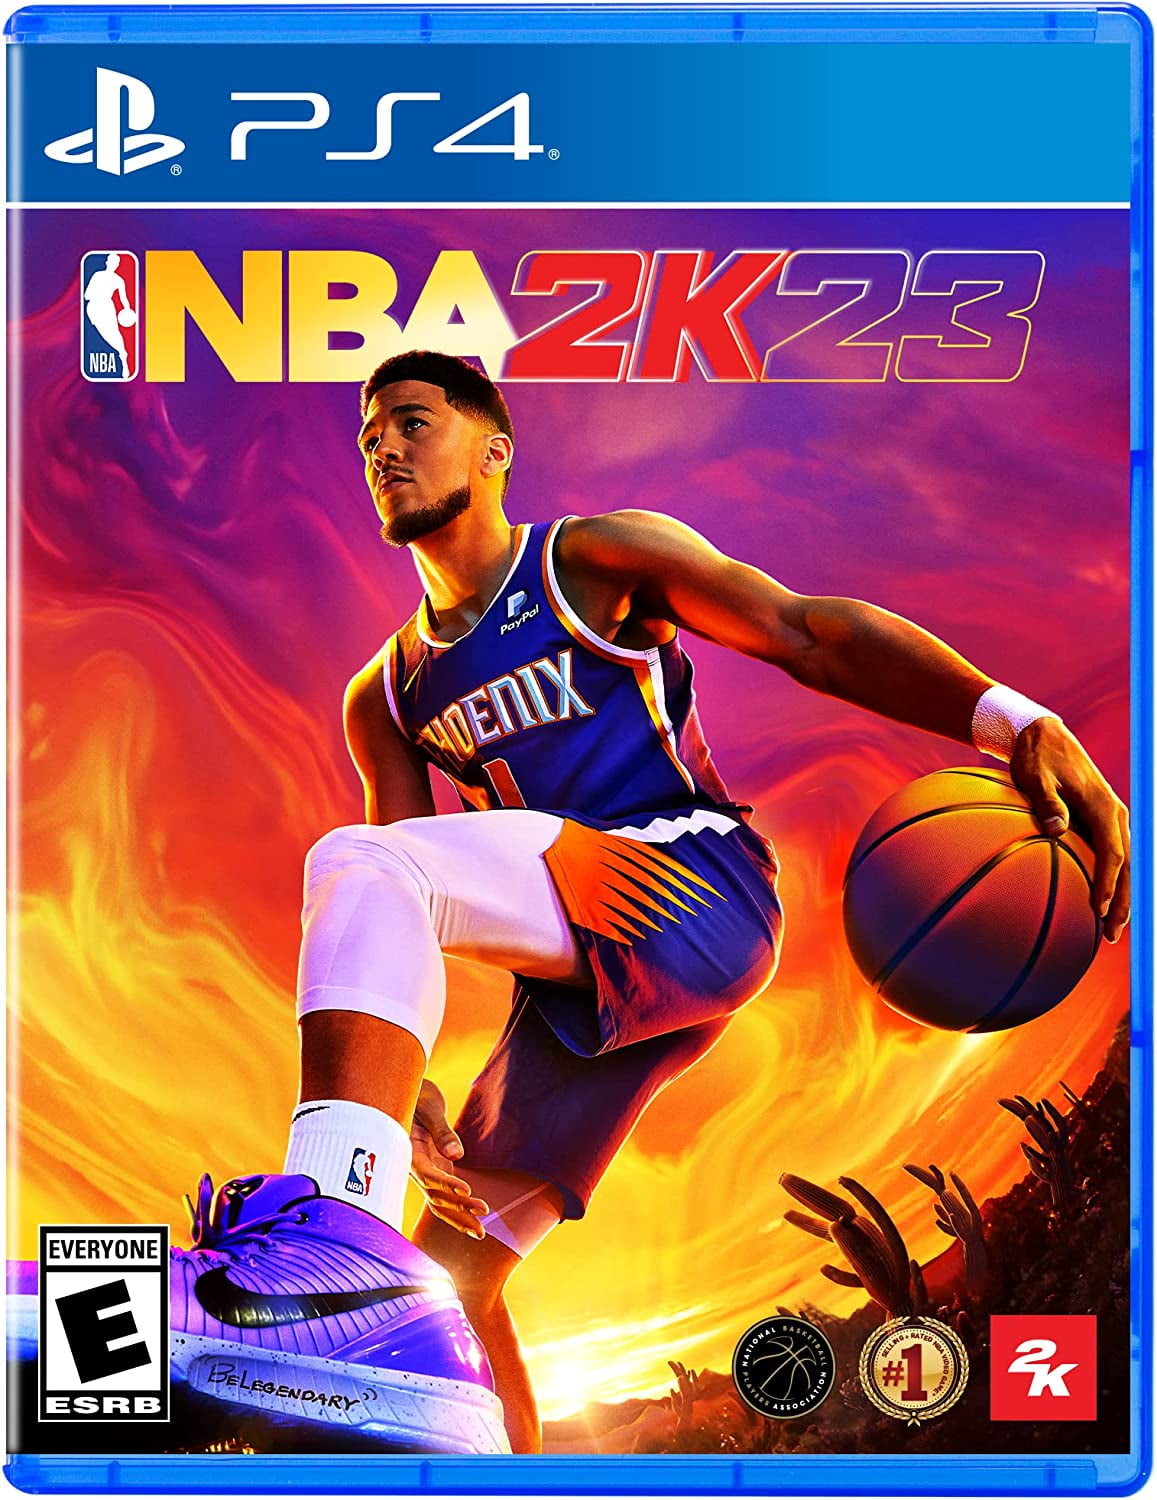 NBA 2K23 - PlayStation 4